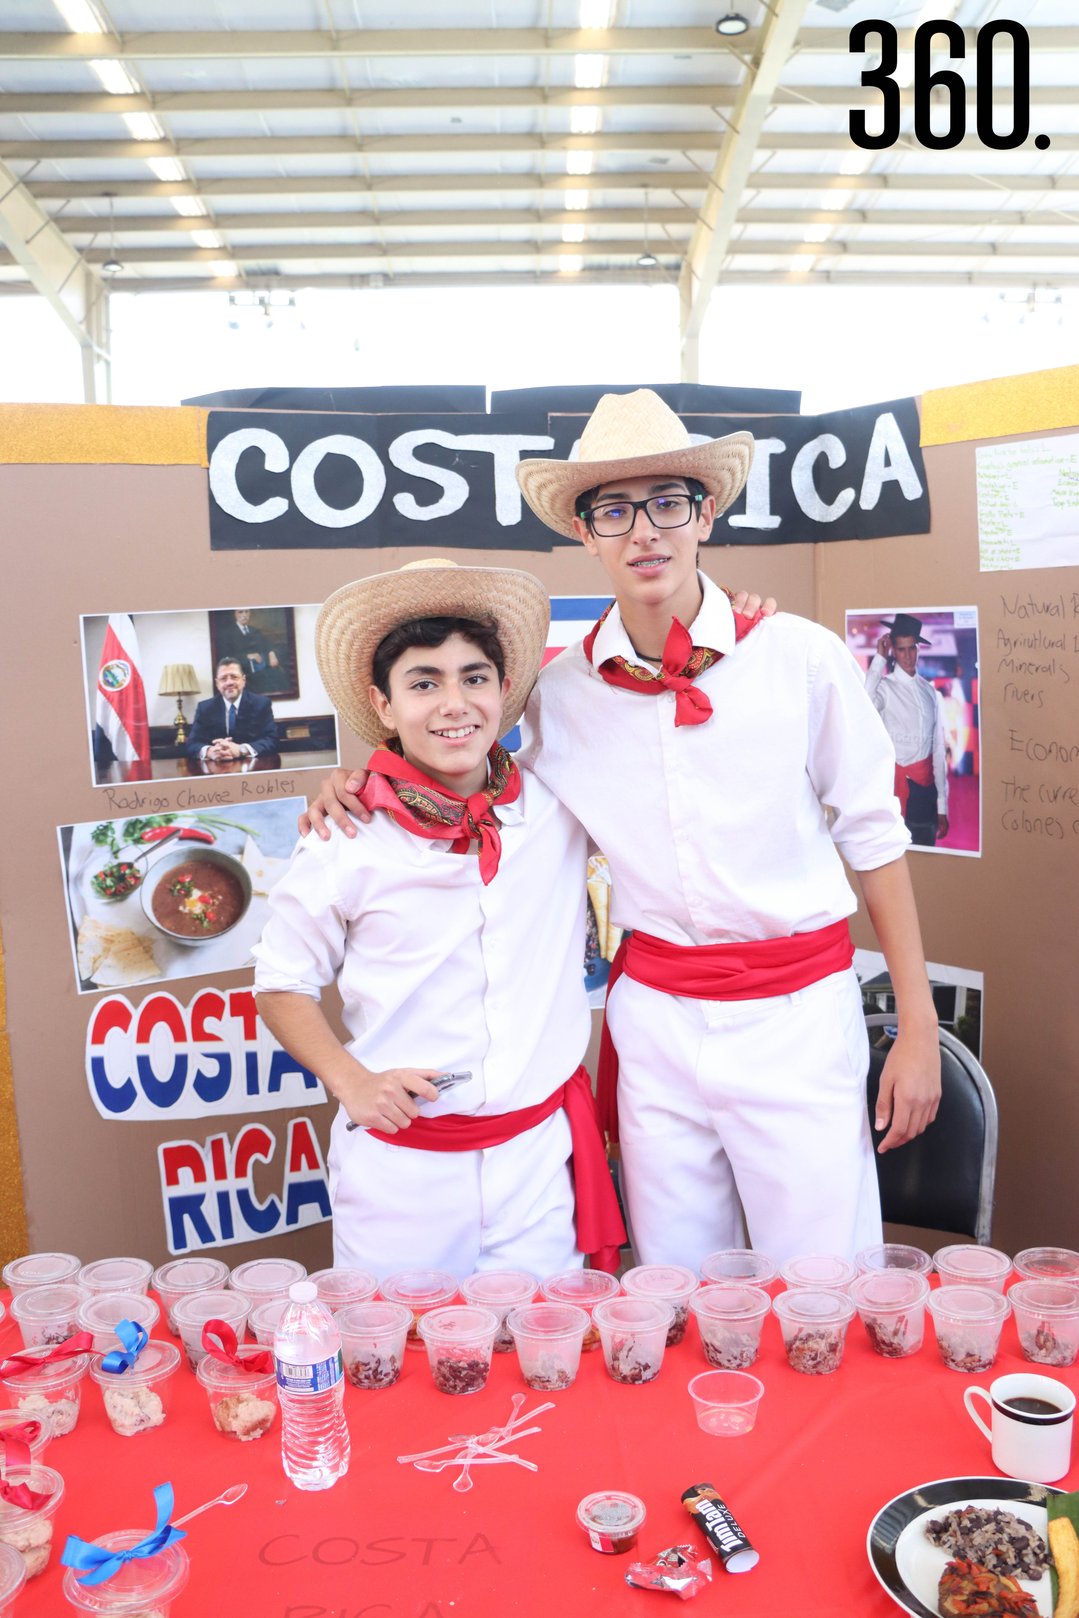 Emilio Valdés y Fernando Leal representando Costa Rica.